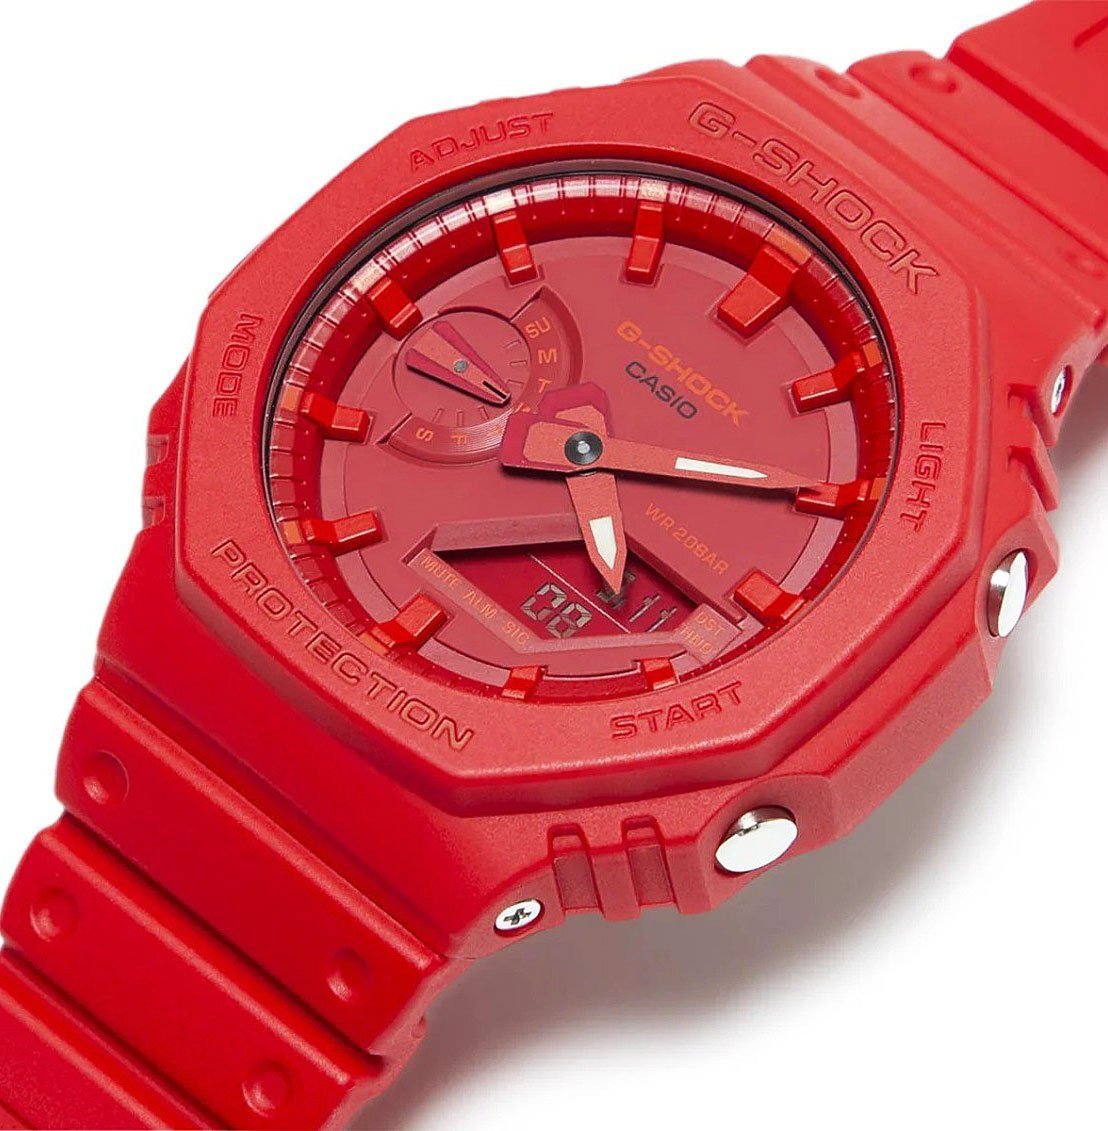 新品1円 深紅のGショック 薄型軽量 八角形フォルム カーボンコア構造 200m防水 耐衝撃構造 デジアナ 腕時計 G-SHOCK メンズ CASIO カシオの画像2